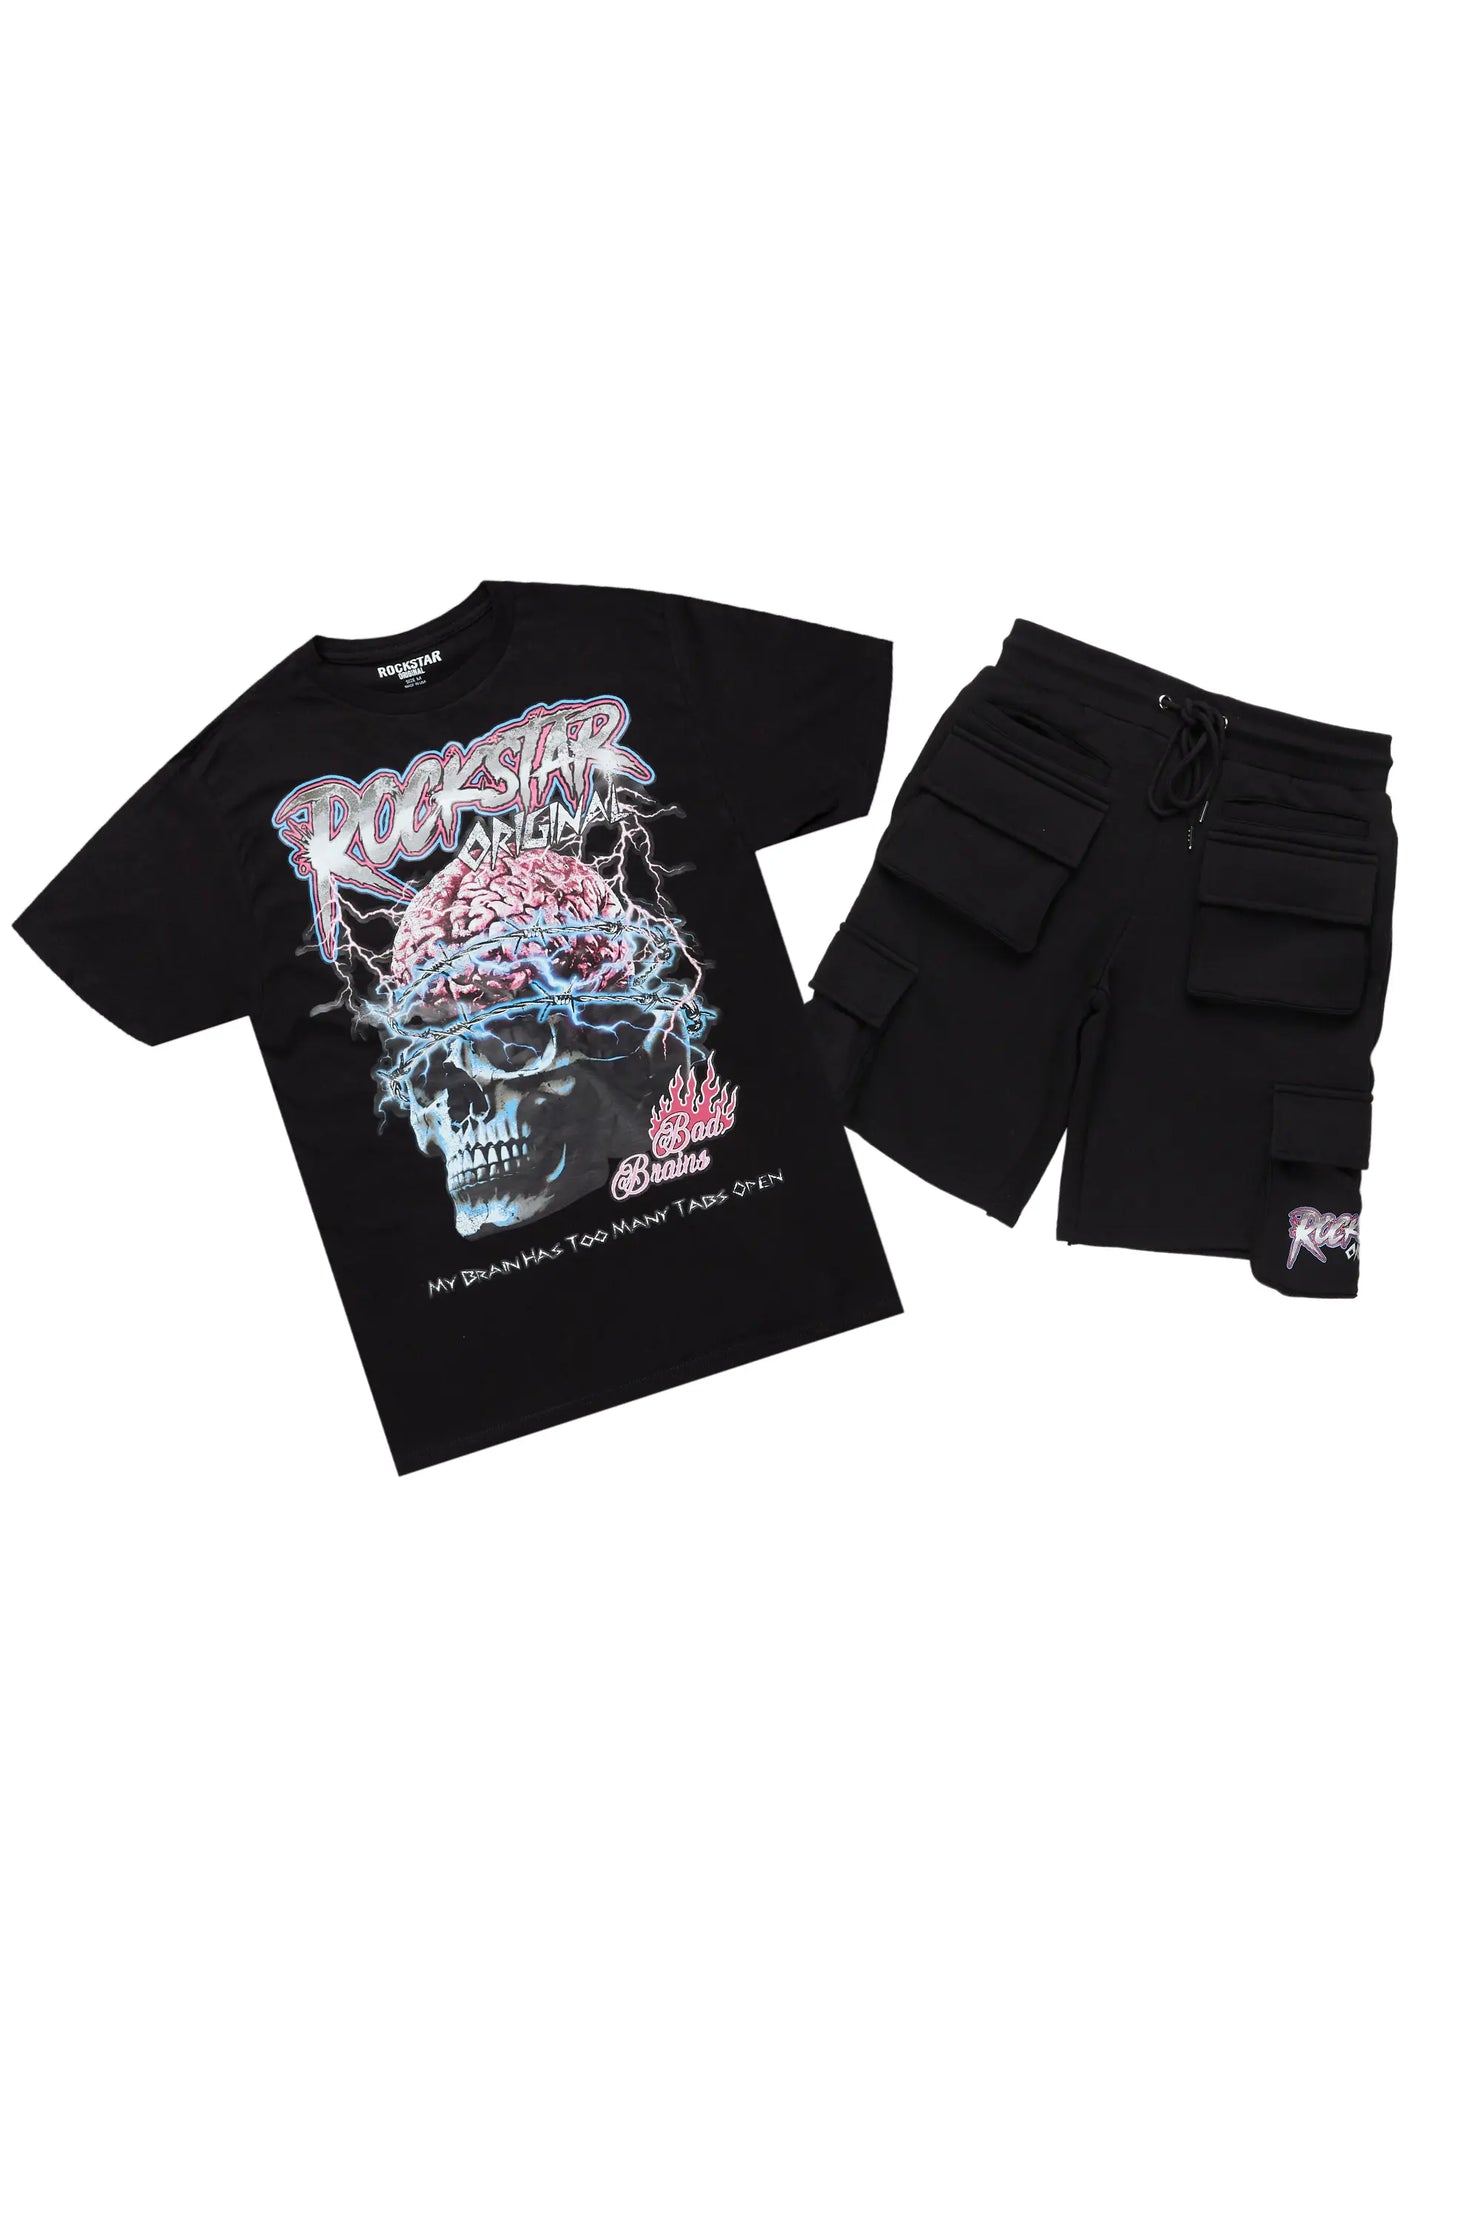 Bad Brains Black T-Shirt Short Set